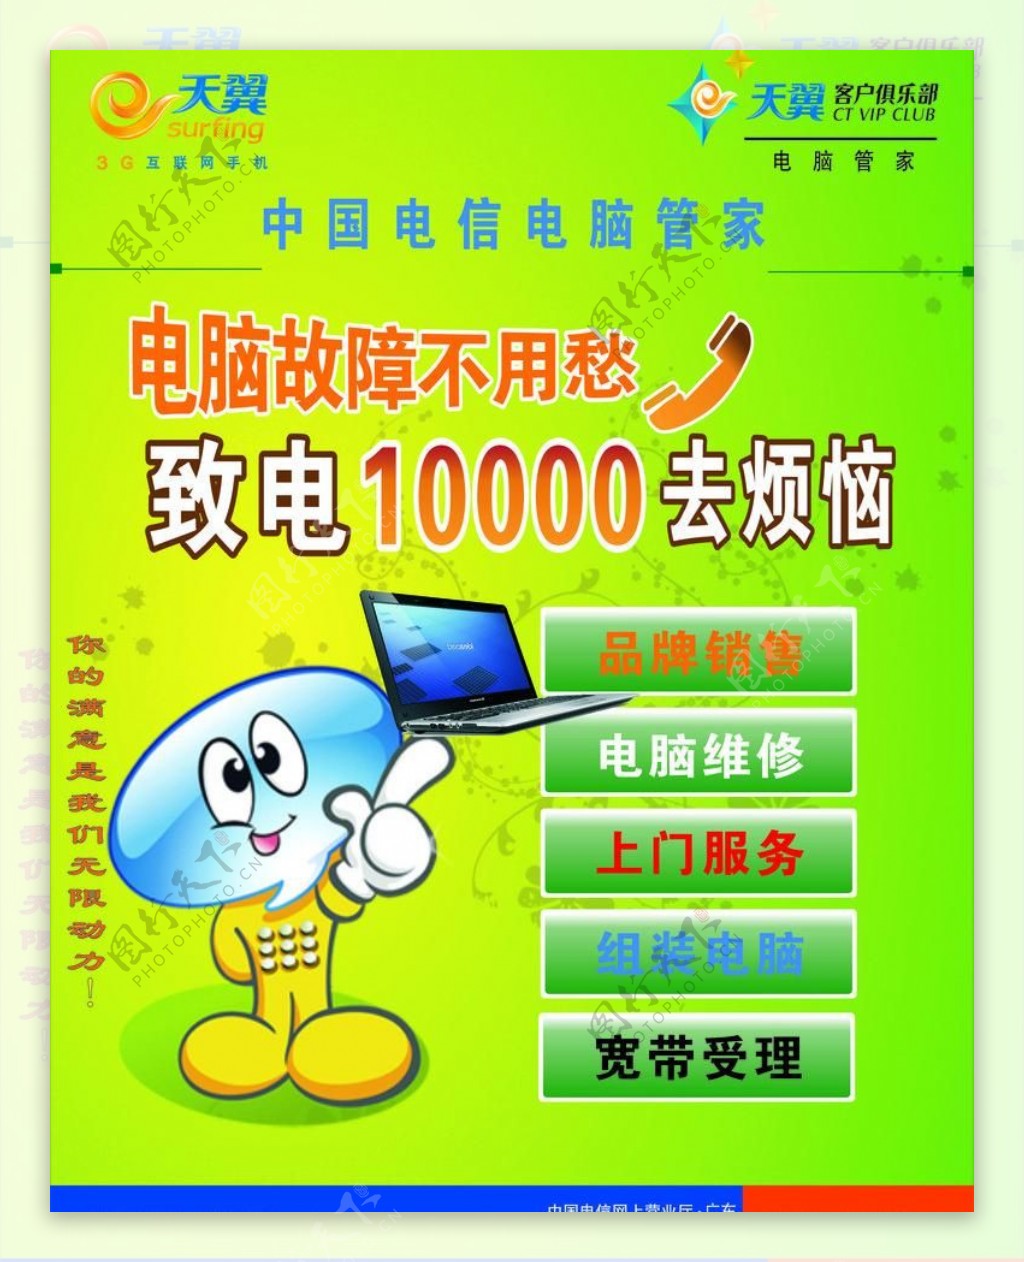 中国电信电脑管家水牌图片